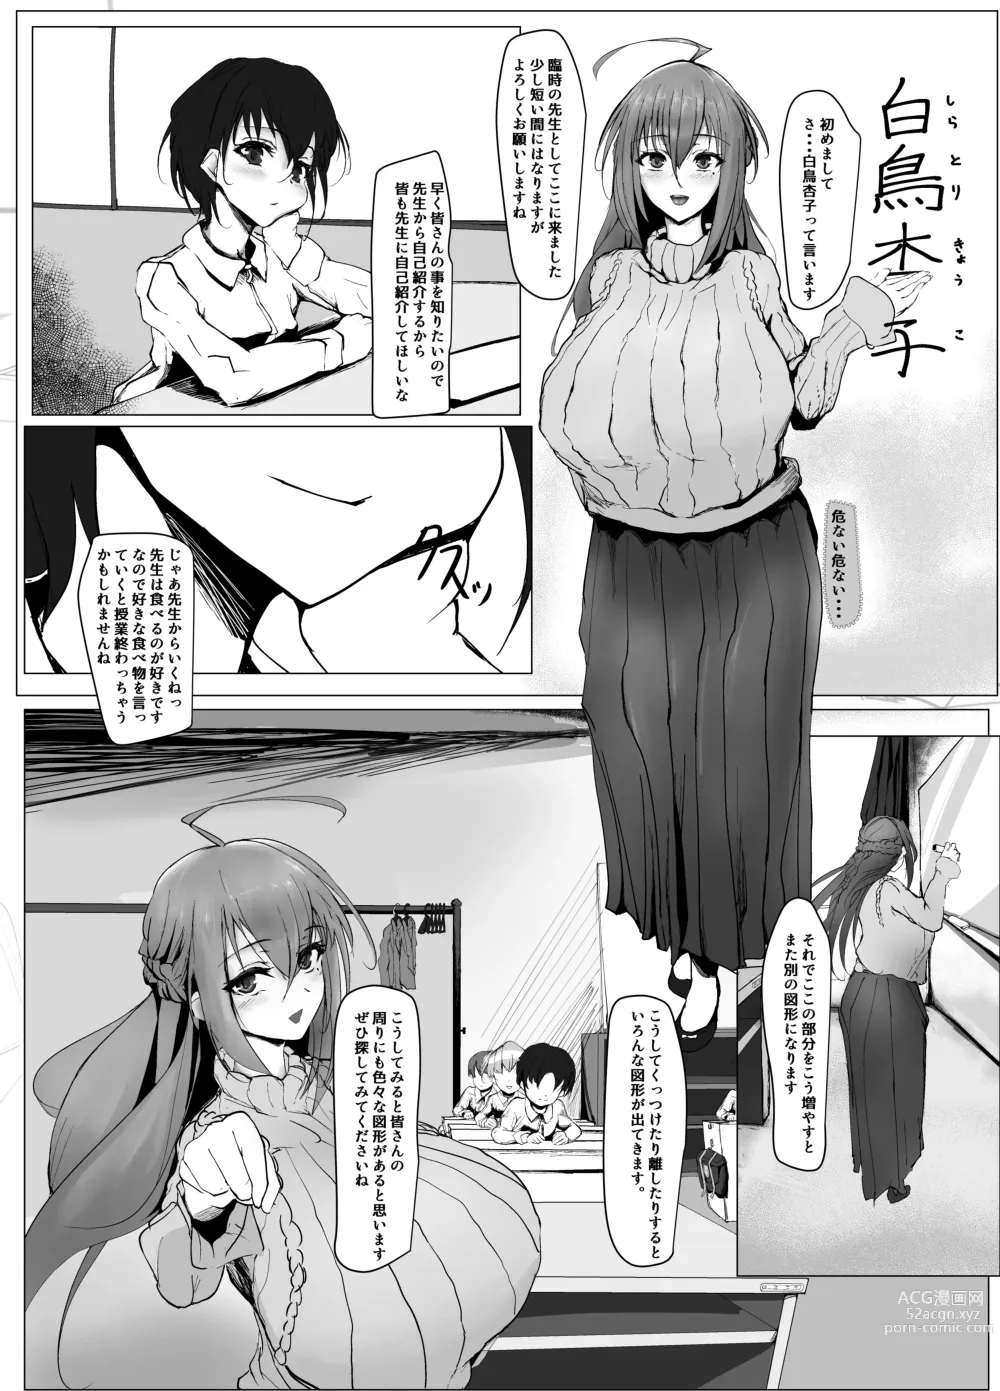 Page 10 of doujinshi Atarashii Kazoku ga Fuemashita!